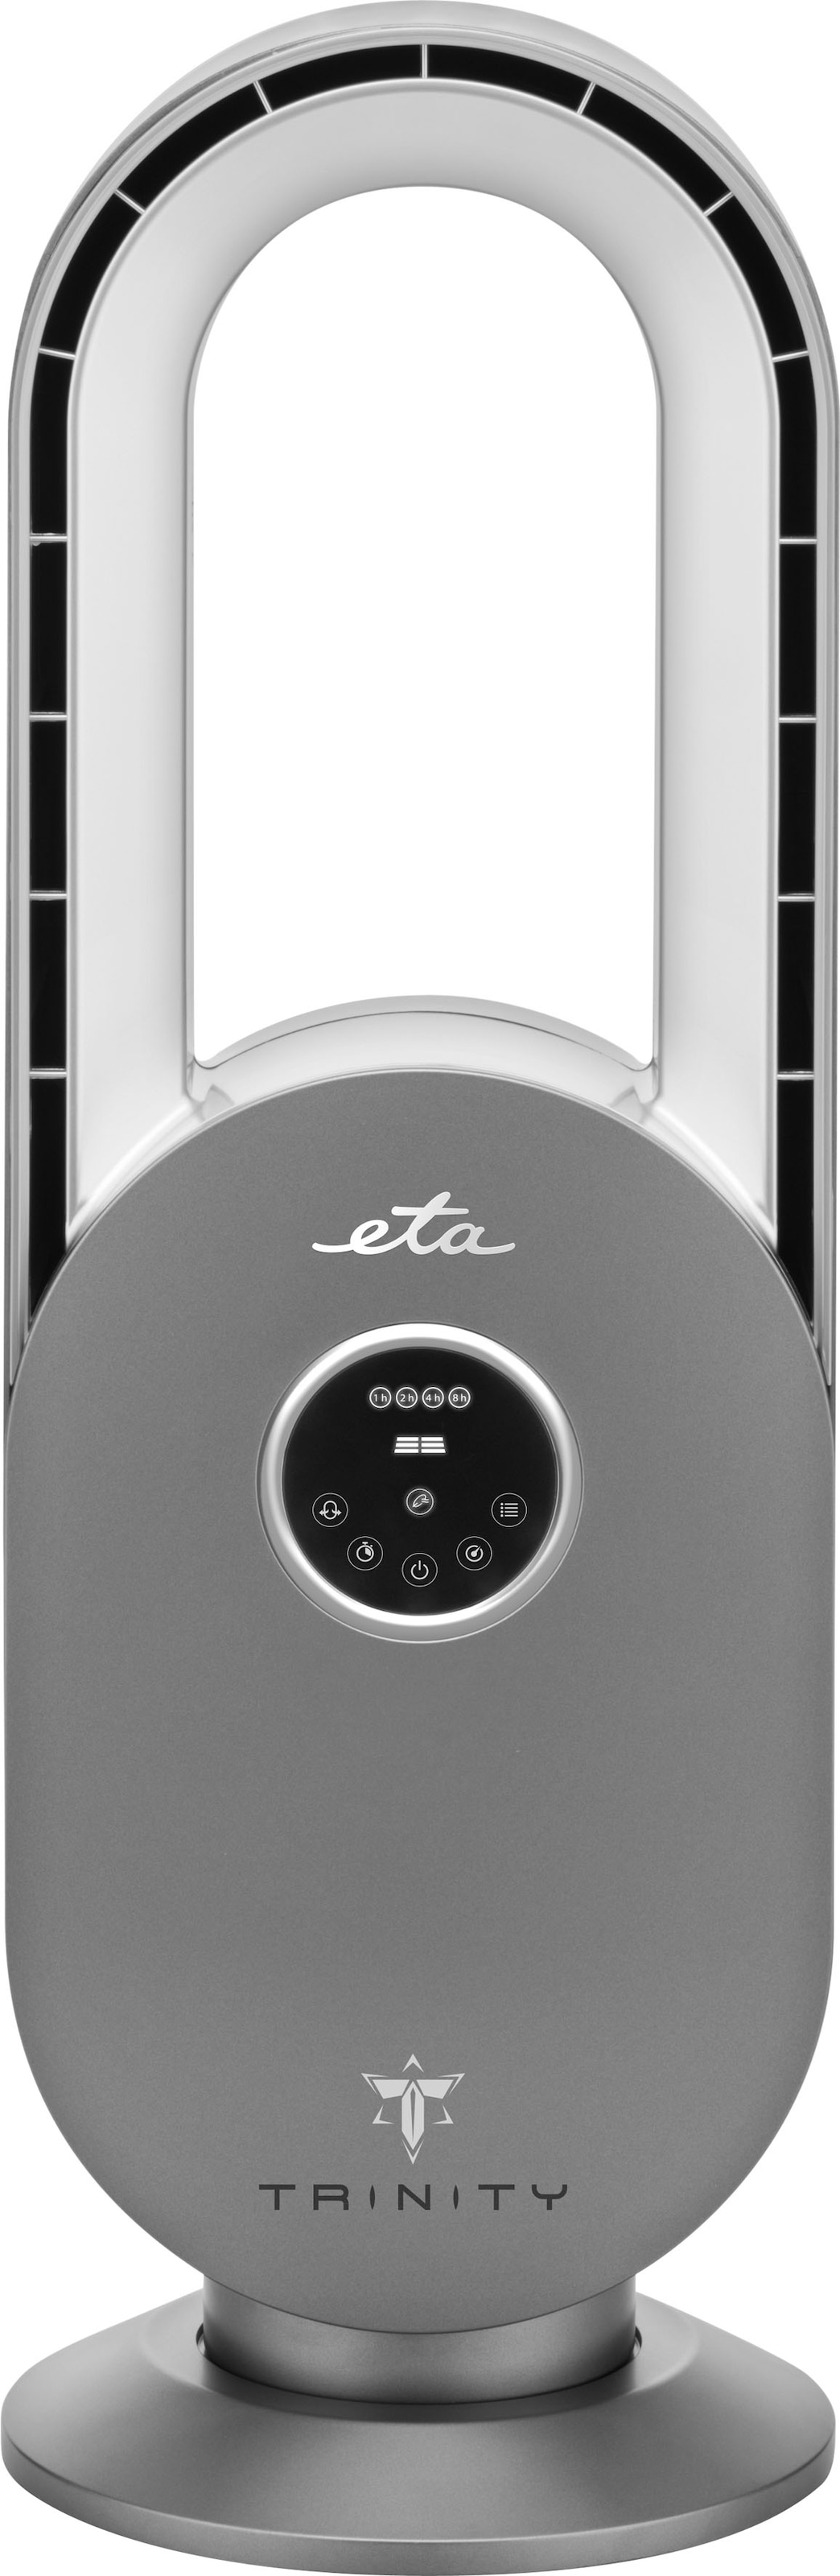 eta Tischventilator »TRINITY ETA360790000«, 3 Geschwindigkeiten und Programme, Oszillation, Timer, LED-Display